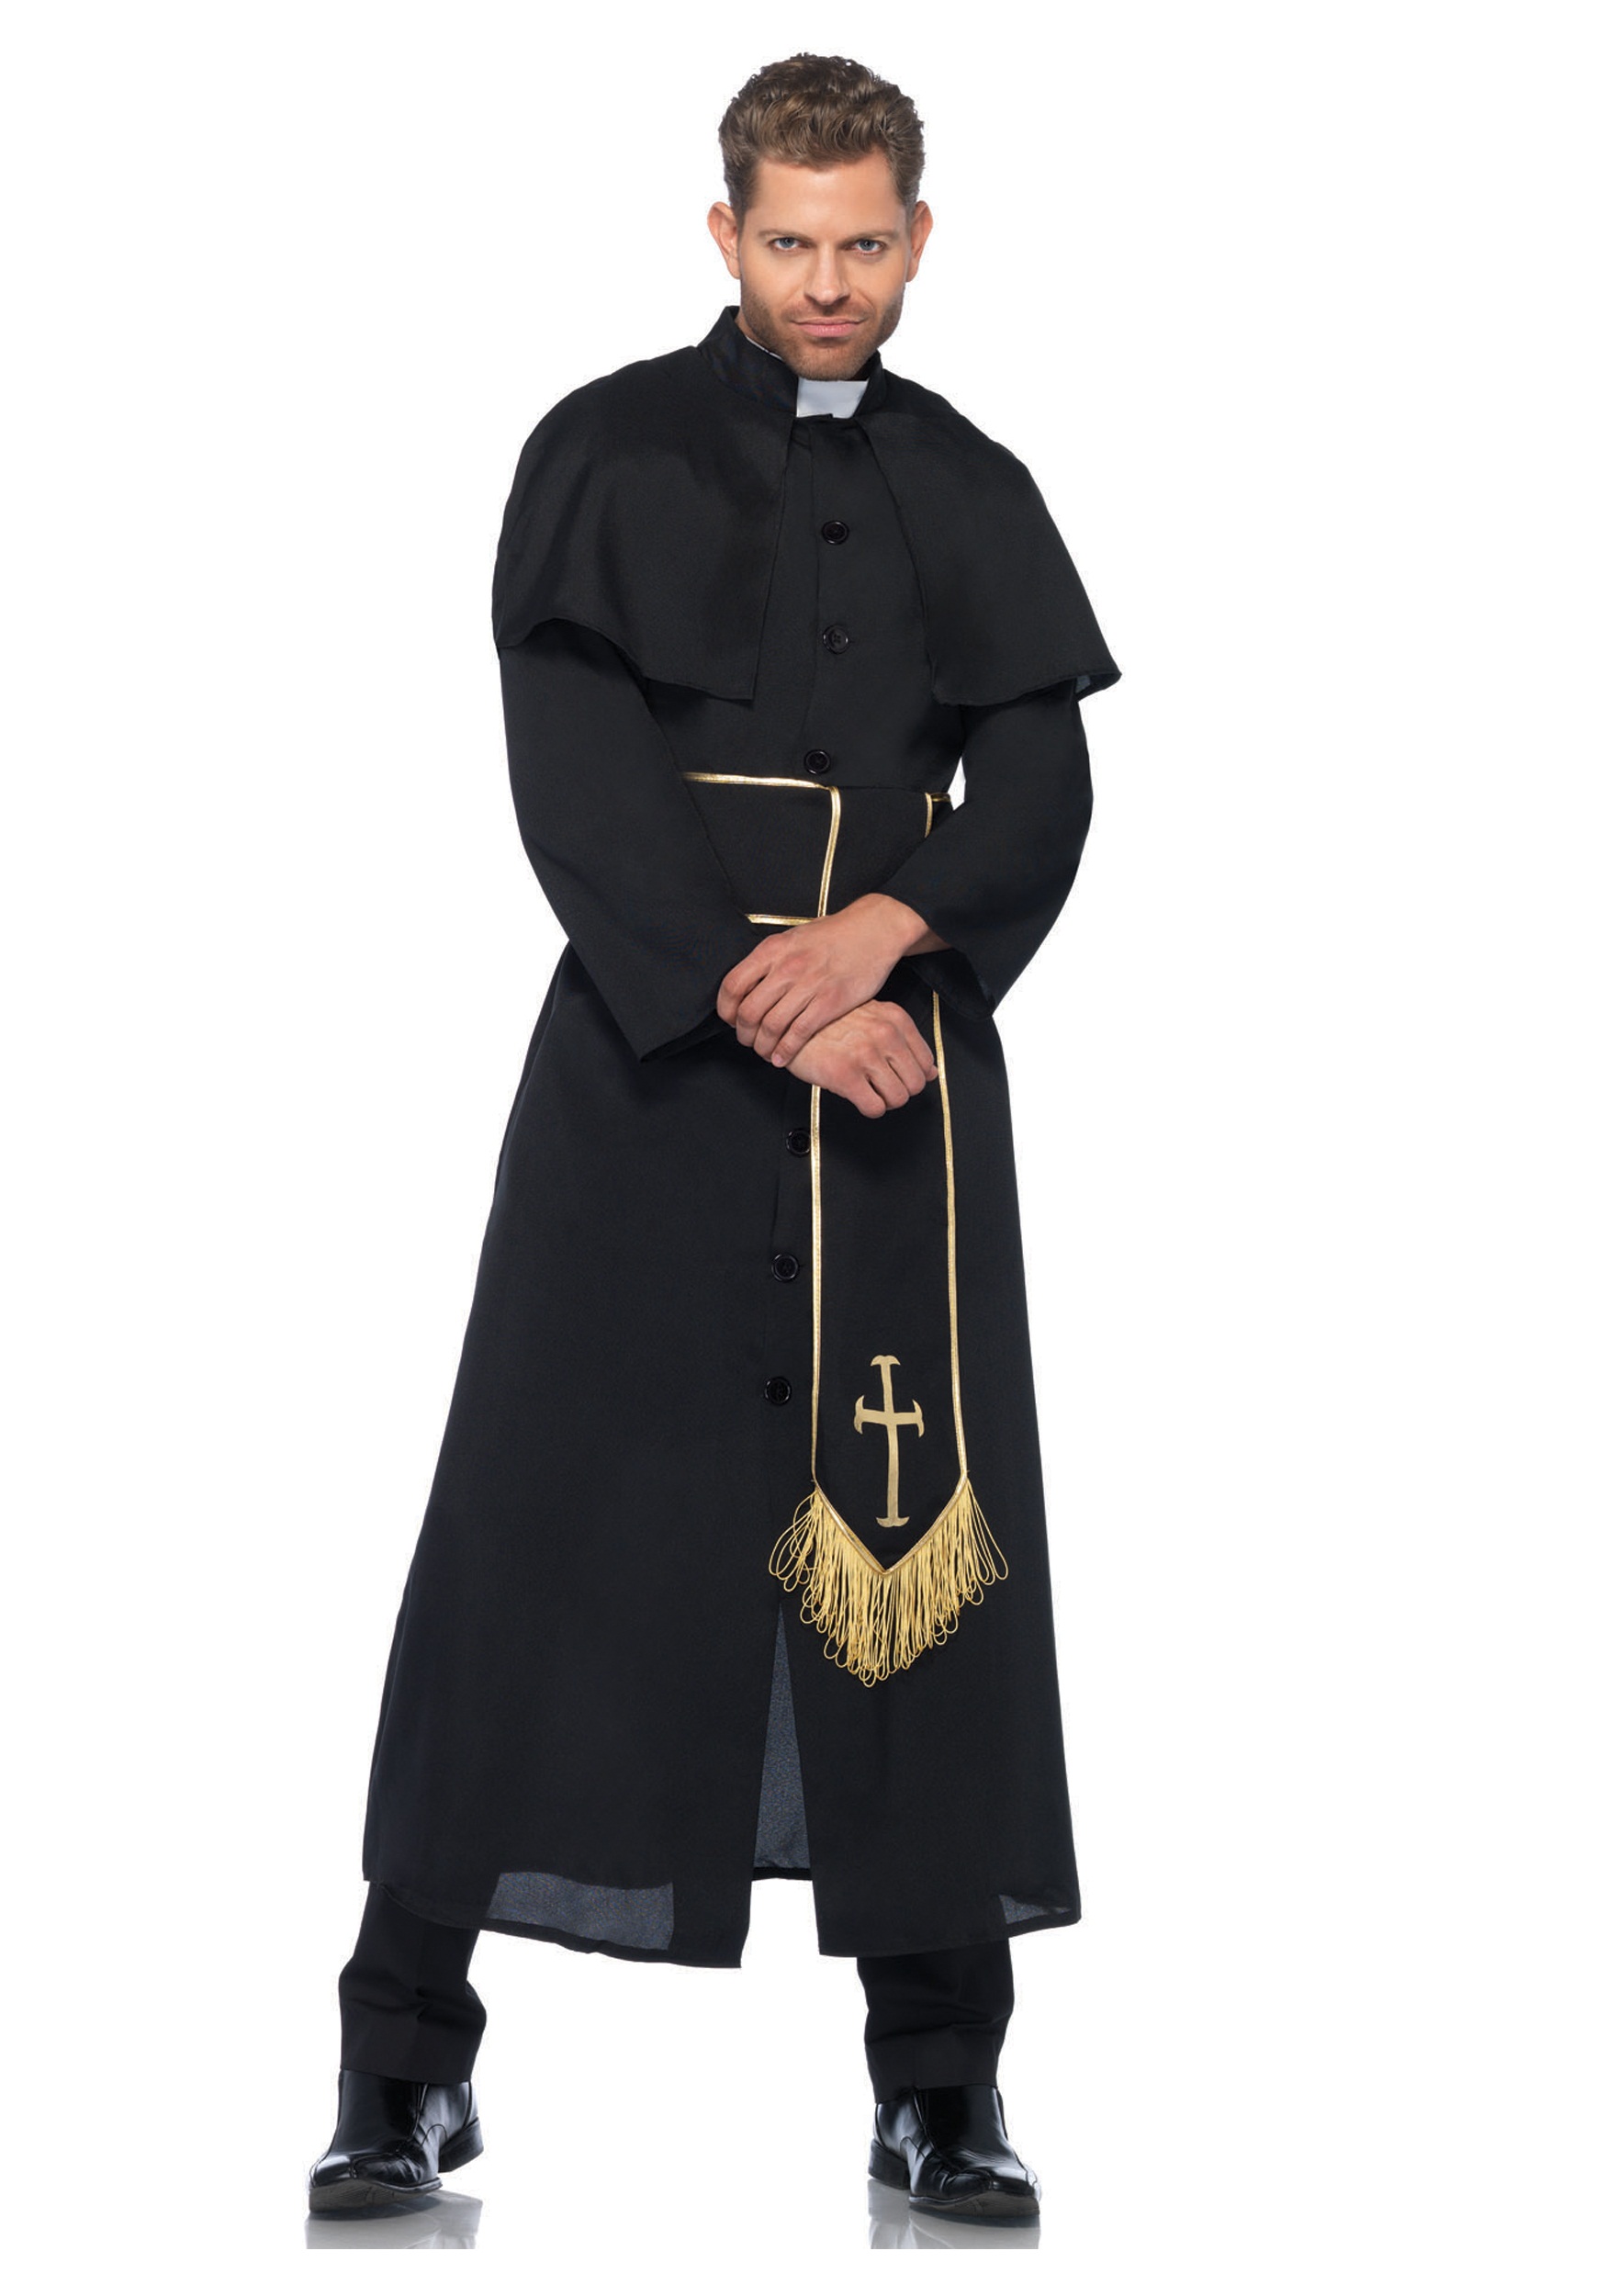 Культовая одежда. Ряса монаха Католика. Сутана католического священника 19 века. 19 Век ряса священника Католика. Облачение католического священника.